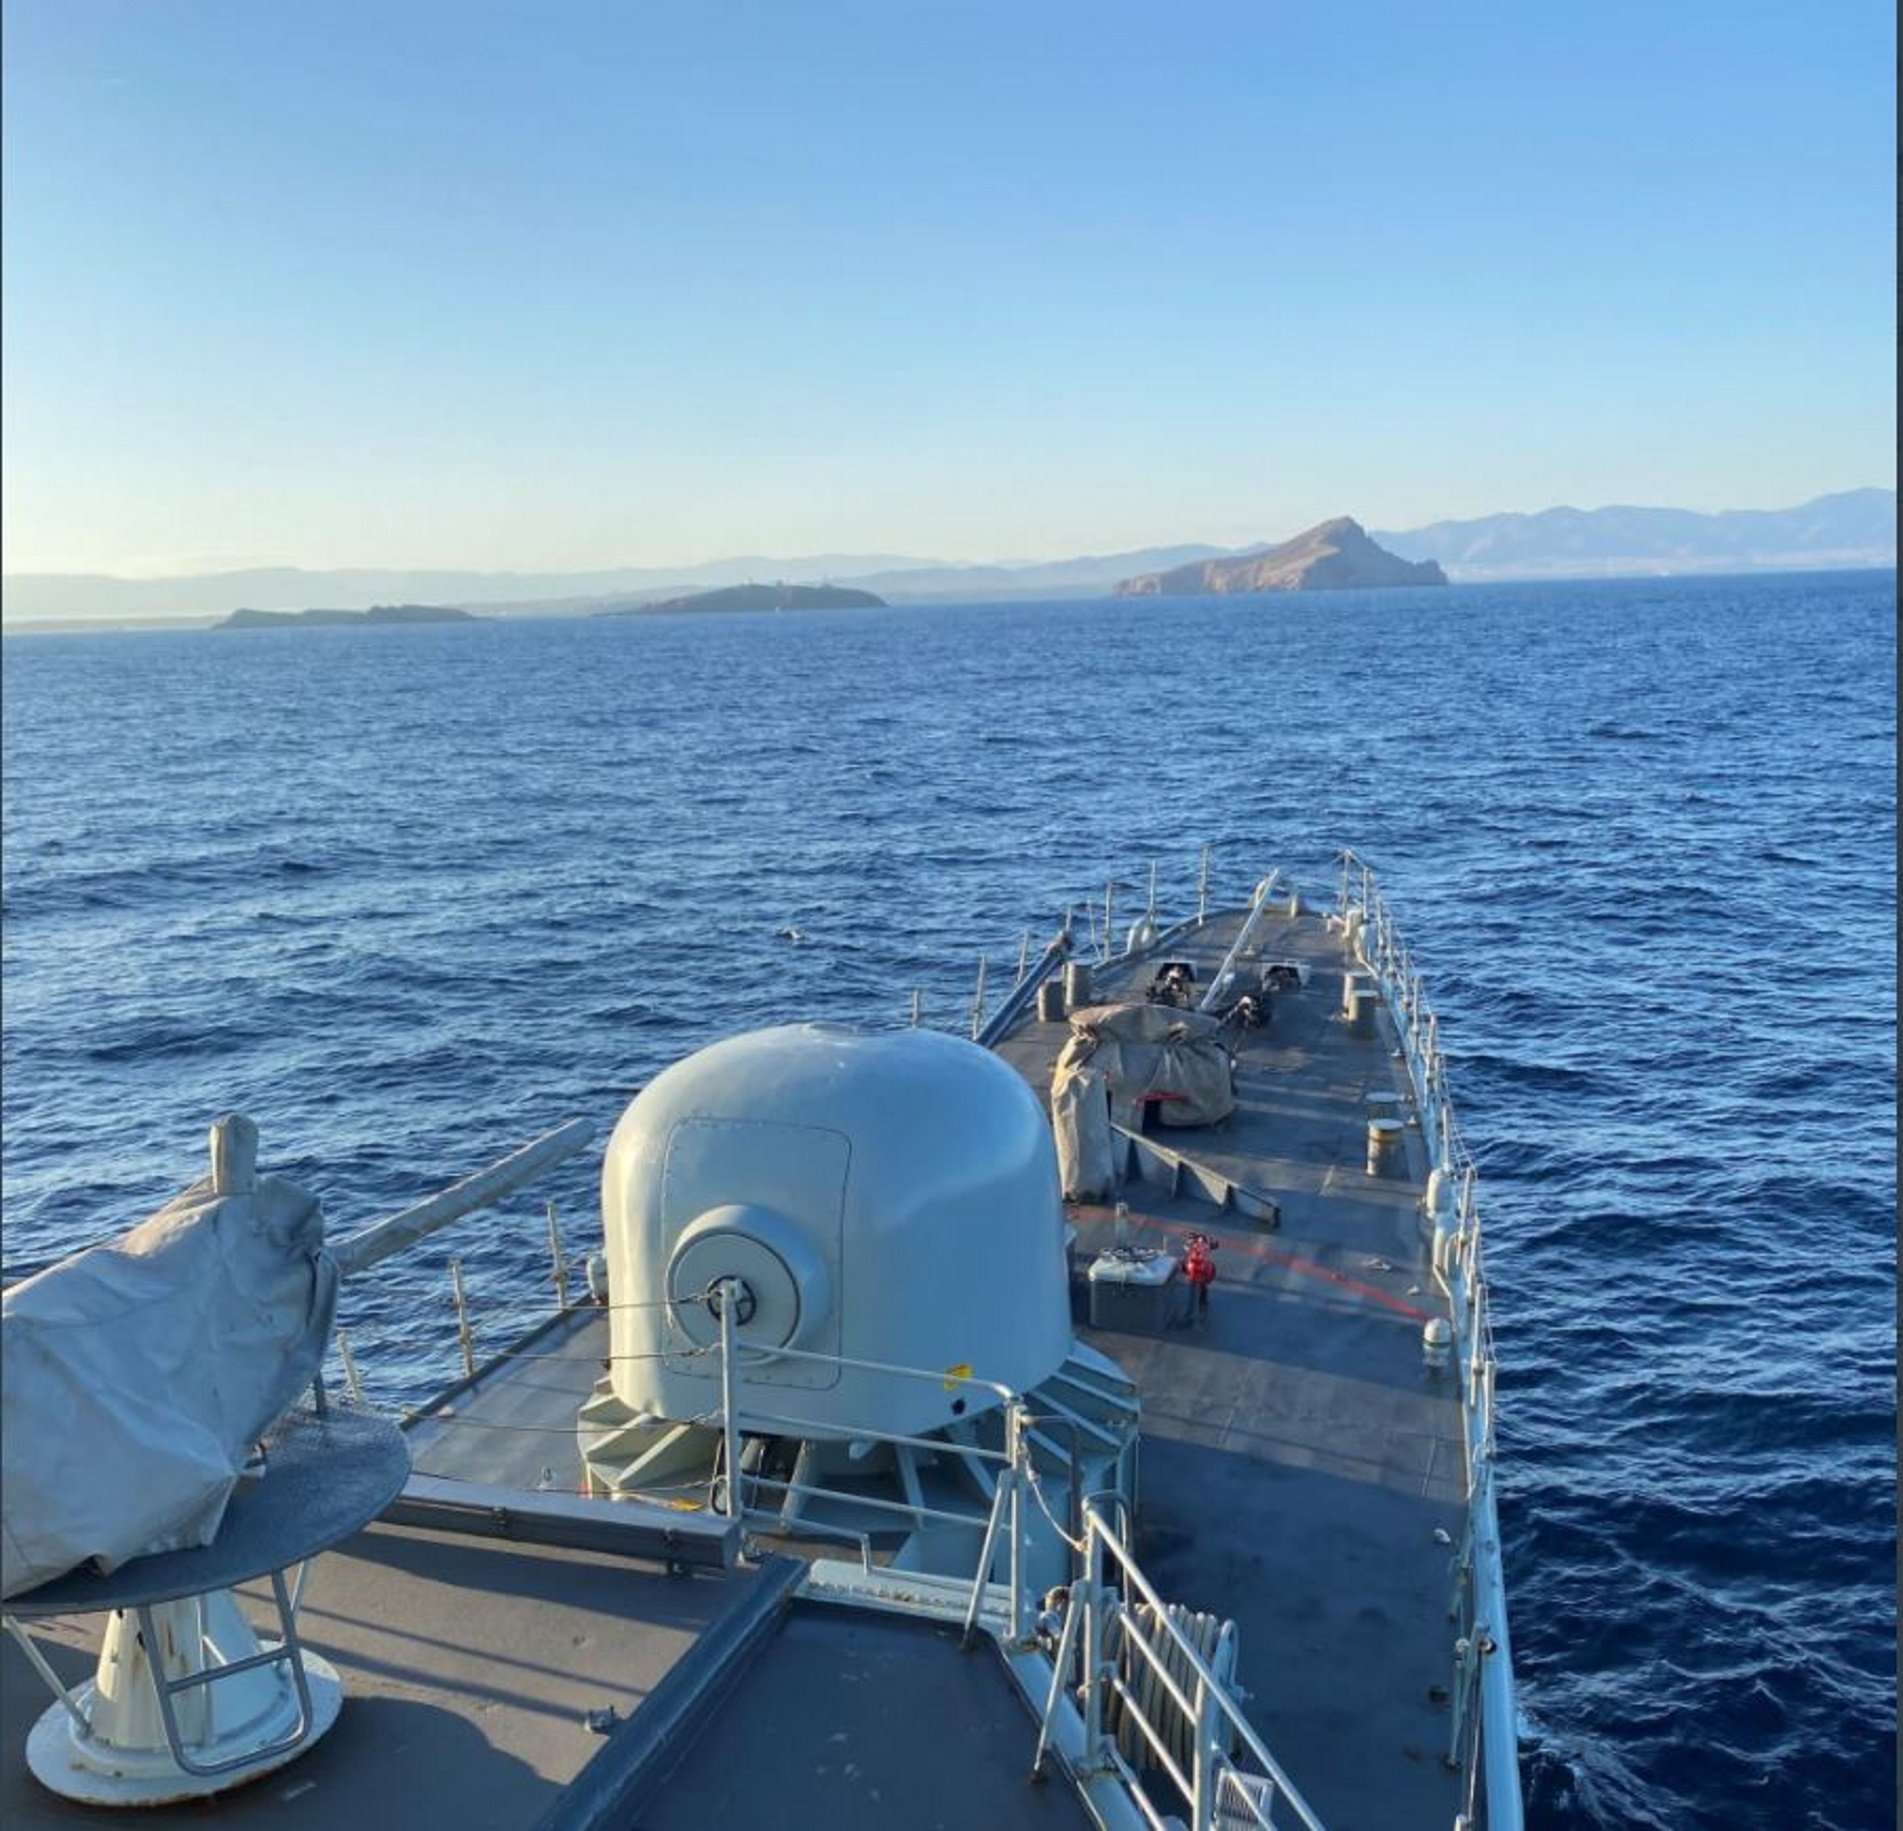 Espanya envia un vaixell de guerra a les Chafarinas: "Perejil II?", diu Iñarritu